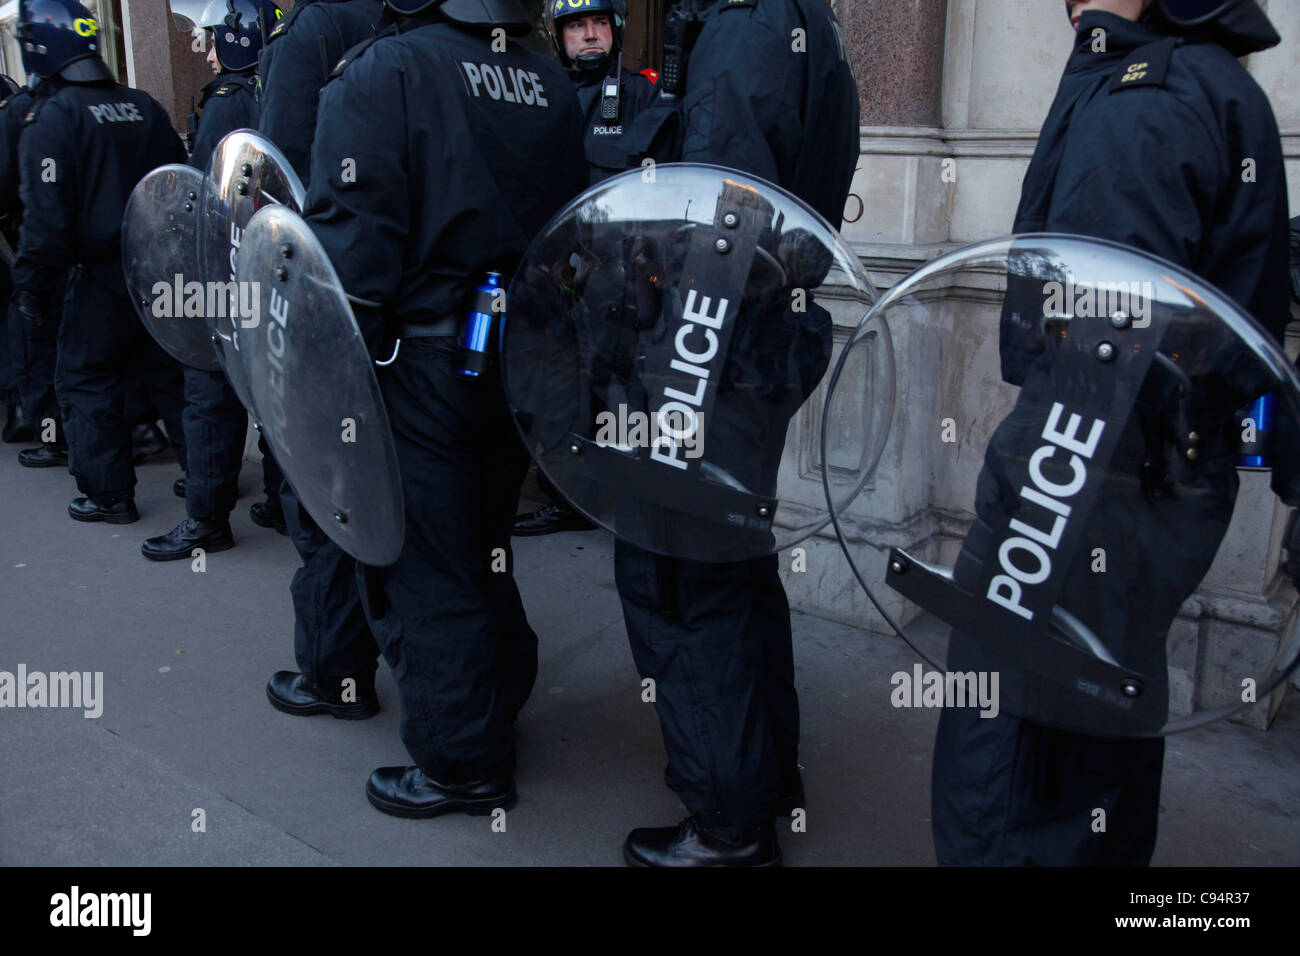 Polizei Shieldsat Demonstration gegen Kürzungen im Bildungsbereich vorbei besetzen London Zeltstadt außerhalb St. Pauls Cathedral. London, UK Stockfoto